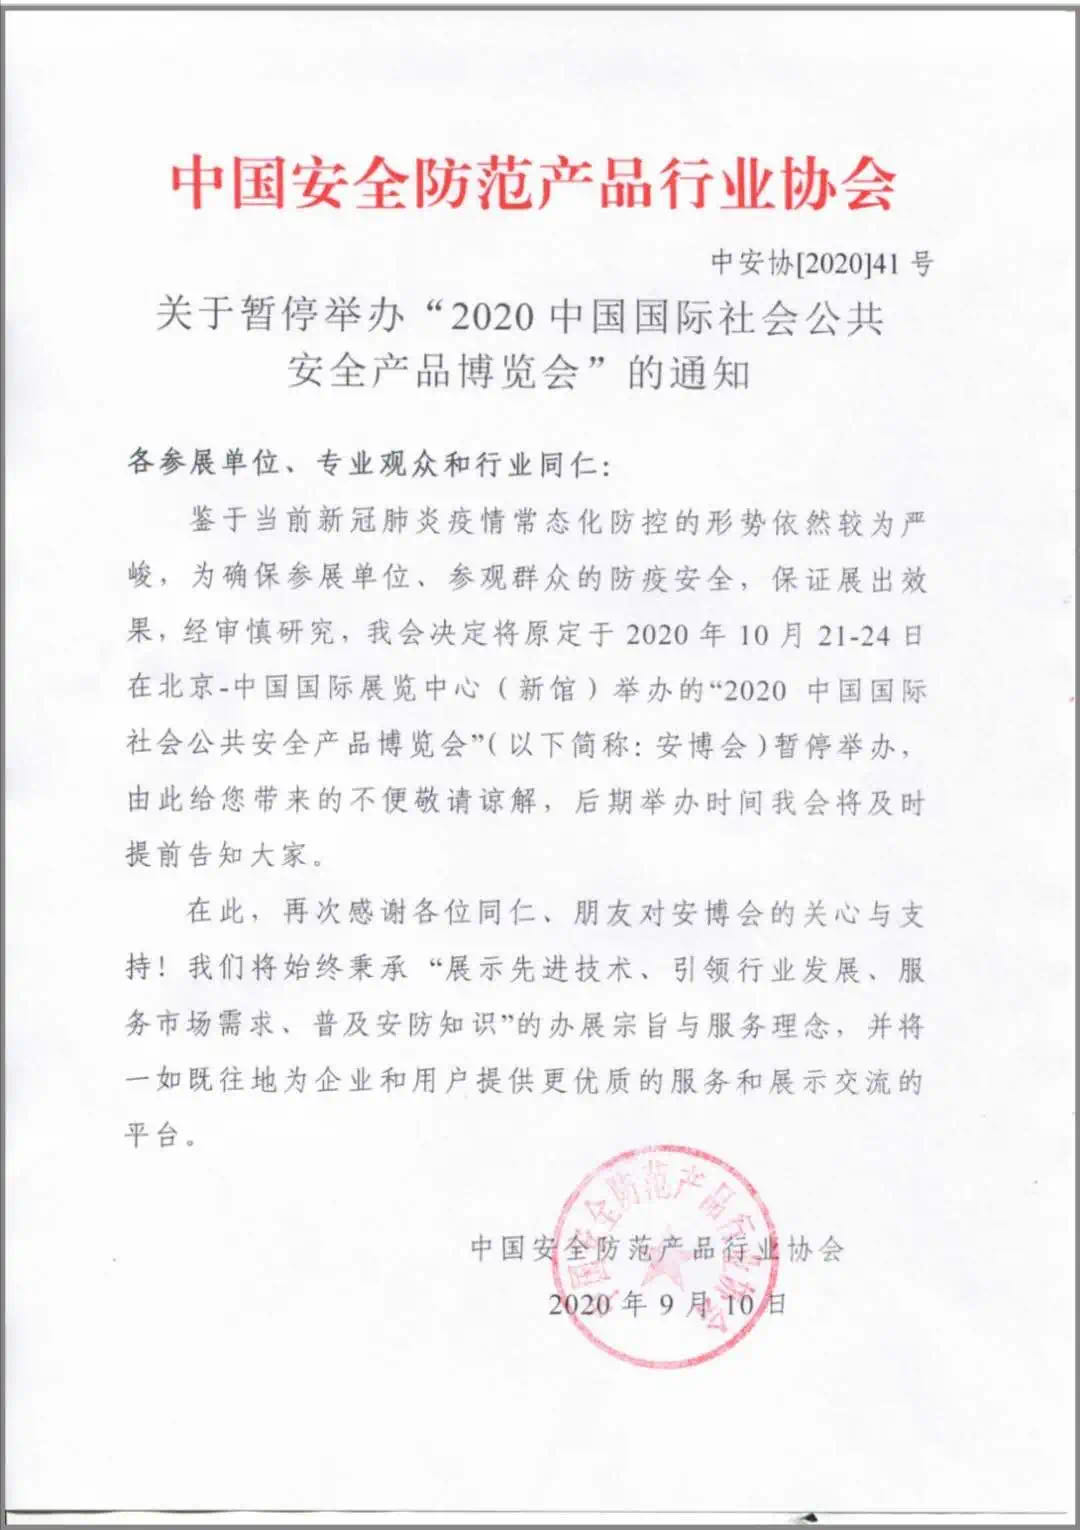 2020中国国际社会公共安全产品博览会暂停